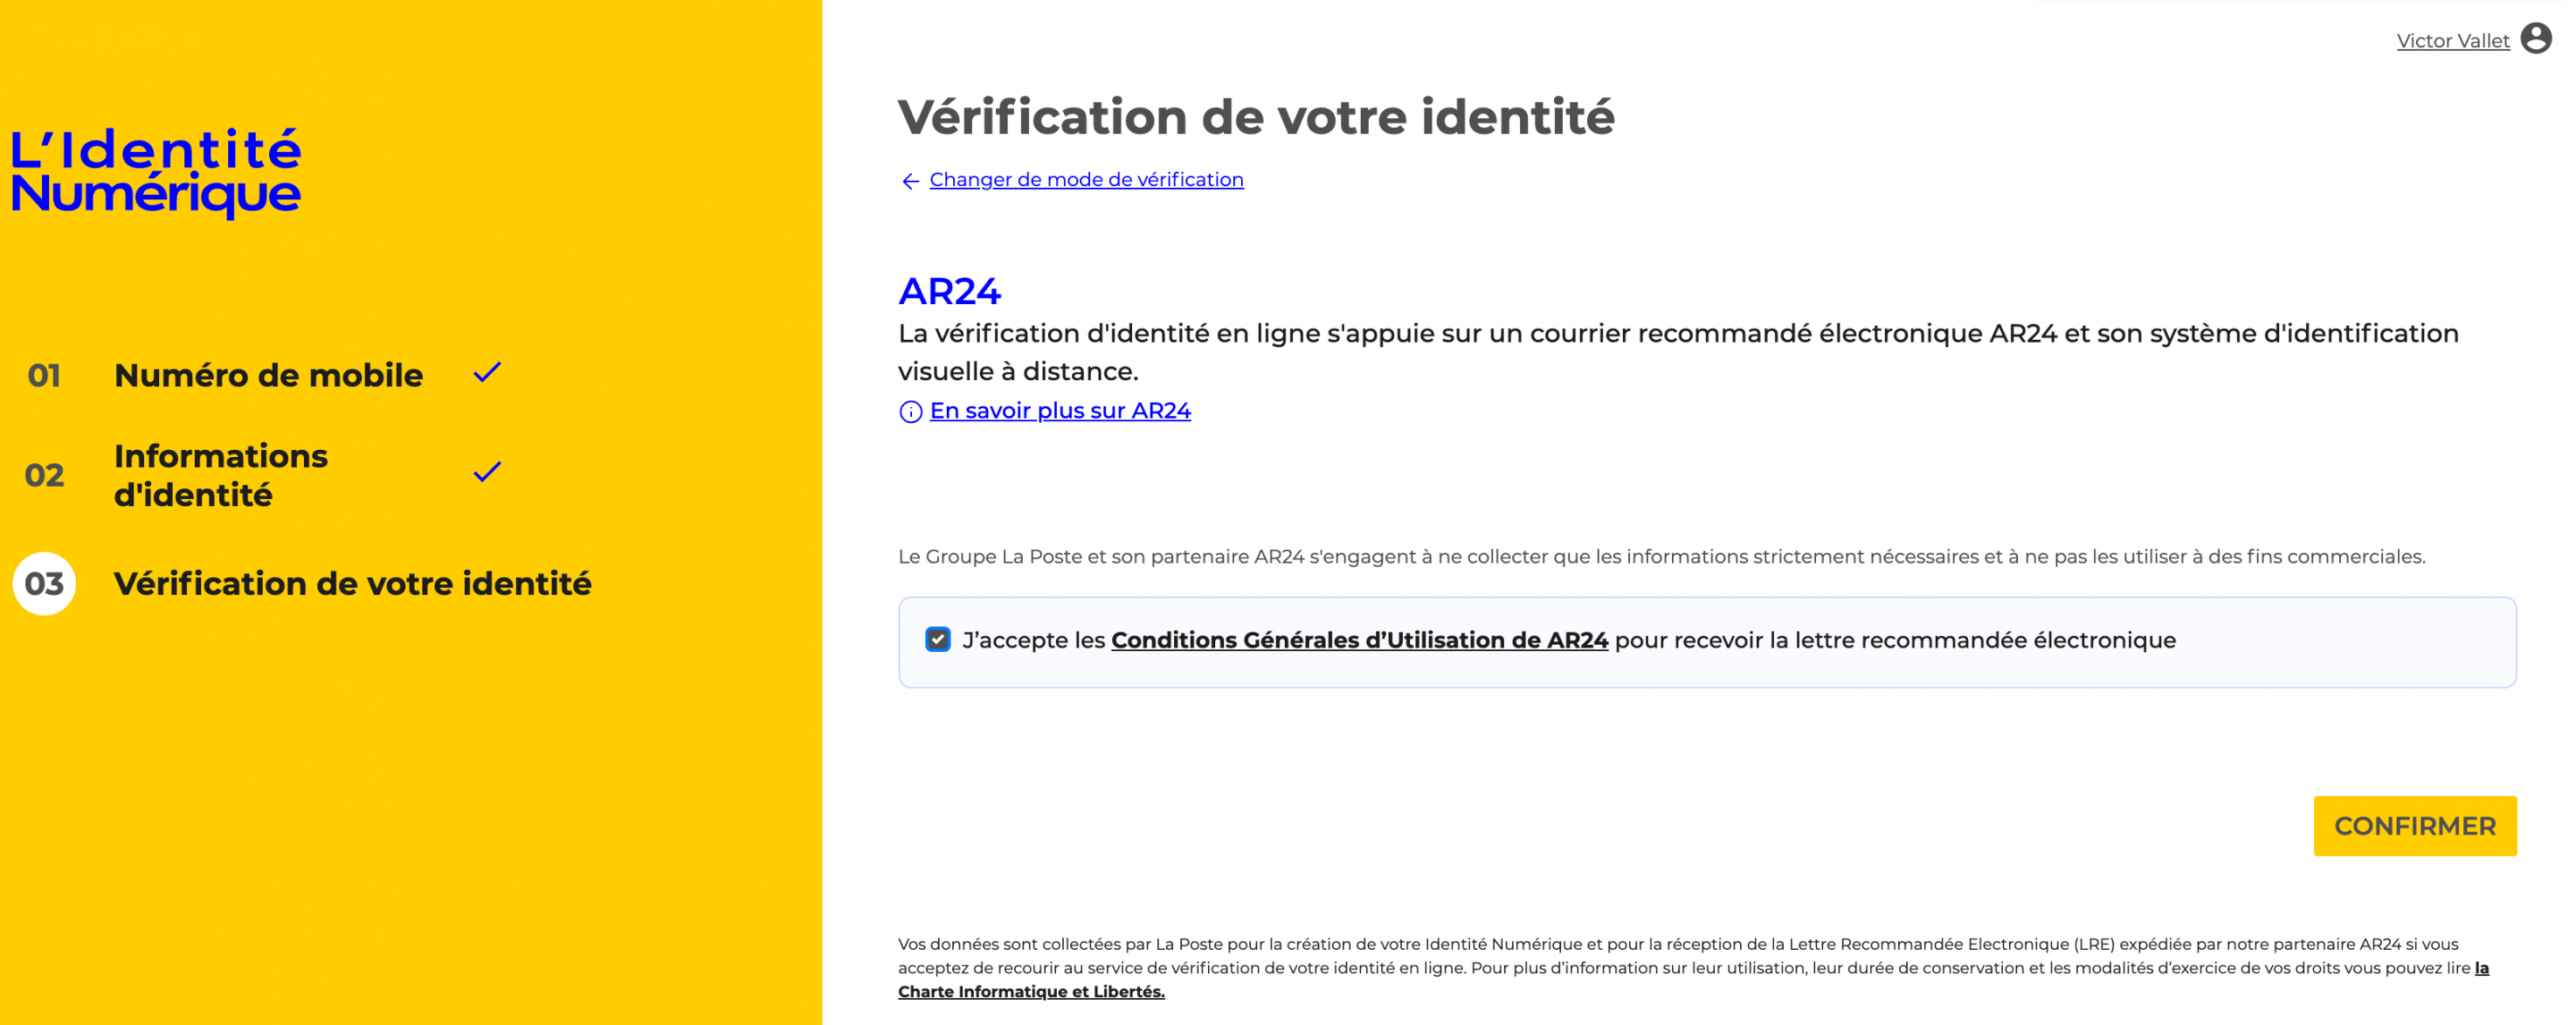 identite numerique verification en ligne ar24